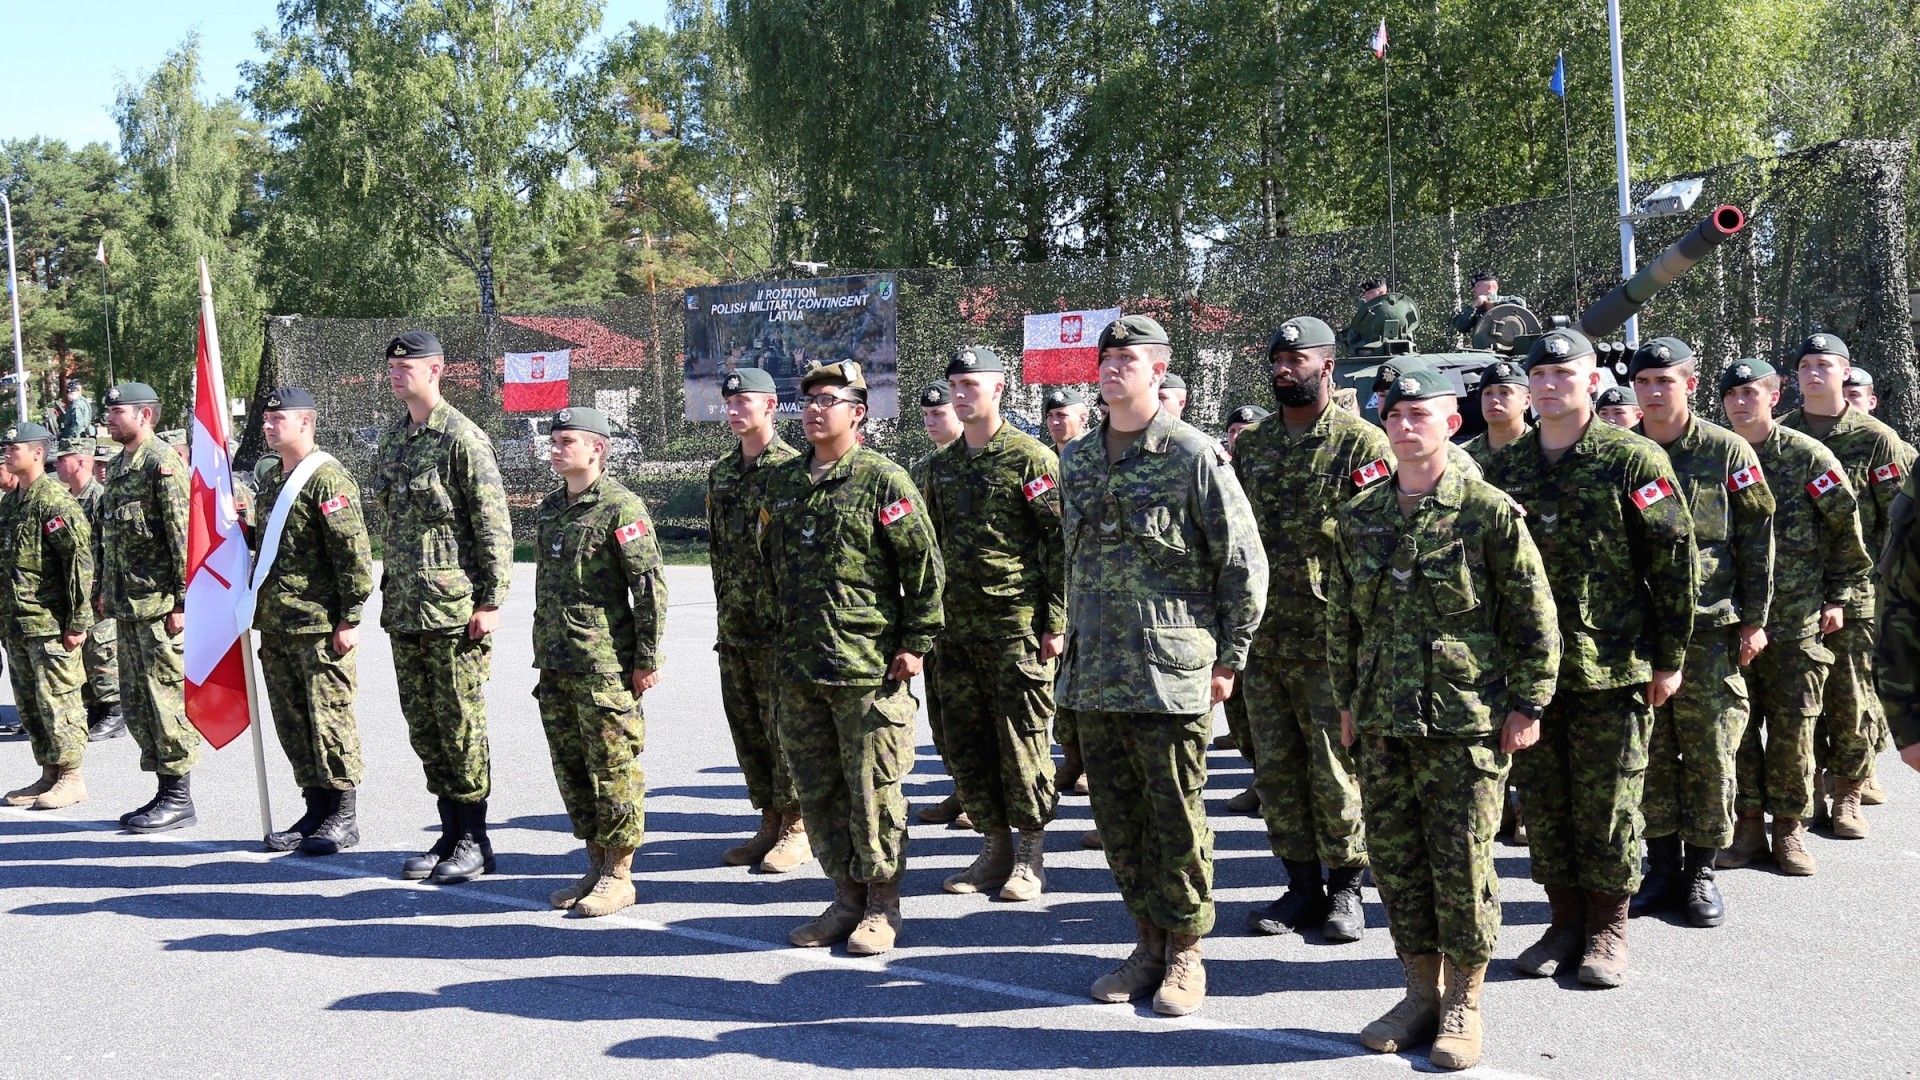 Kanadyjczycy, którzy stanowią trzon batalionu NATO na Łotwie. Fot. Rafał Lesiecki / Defence24.pl